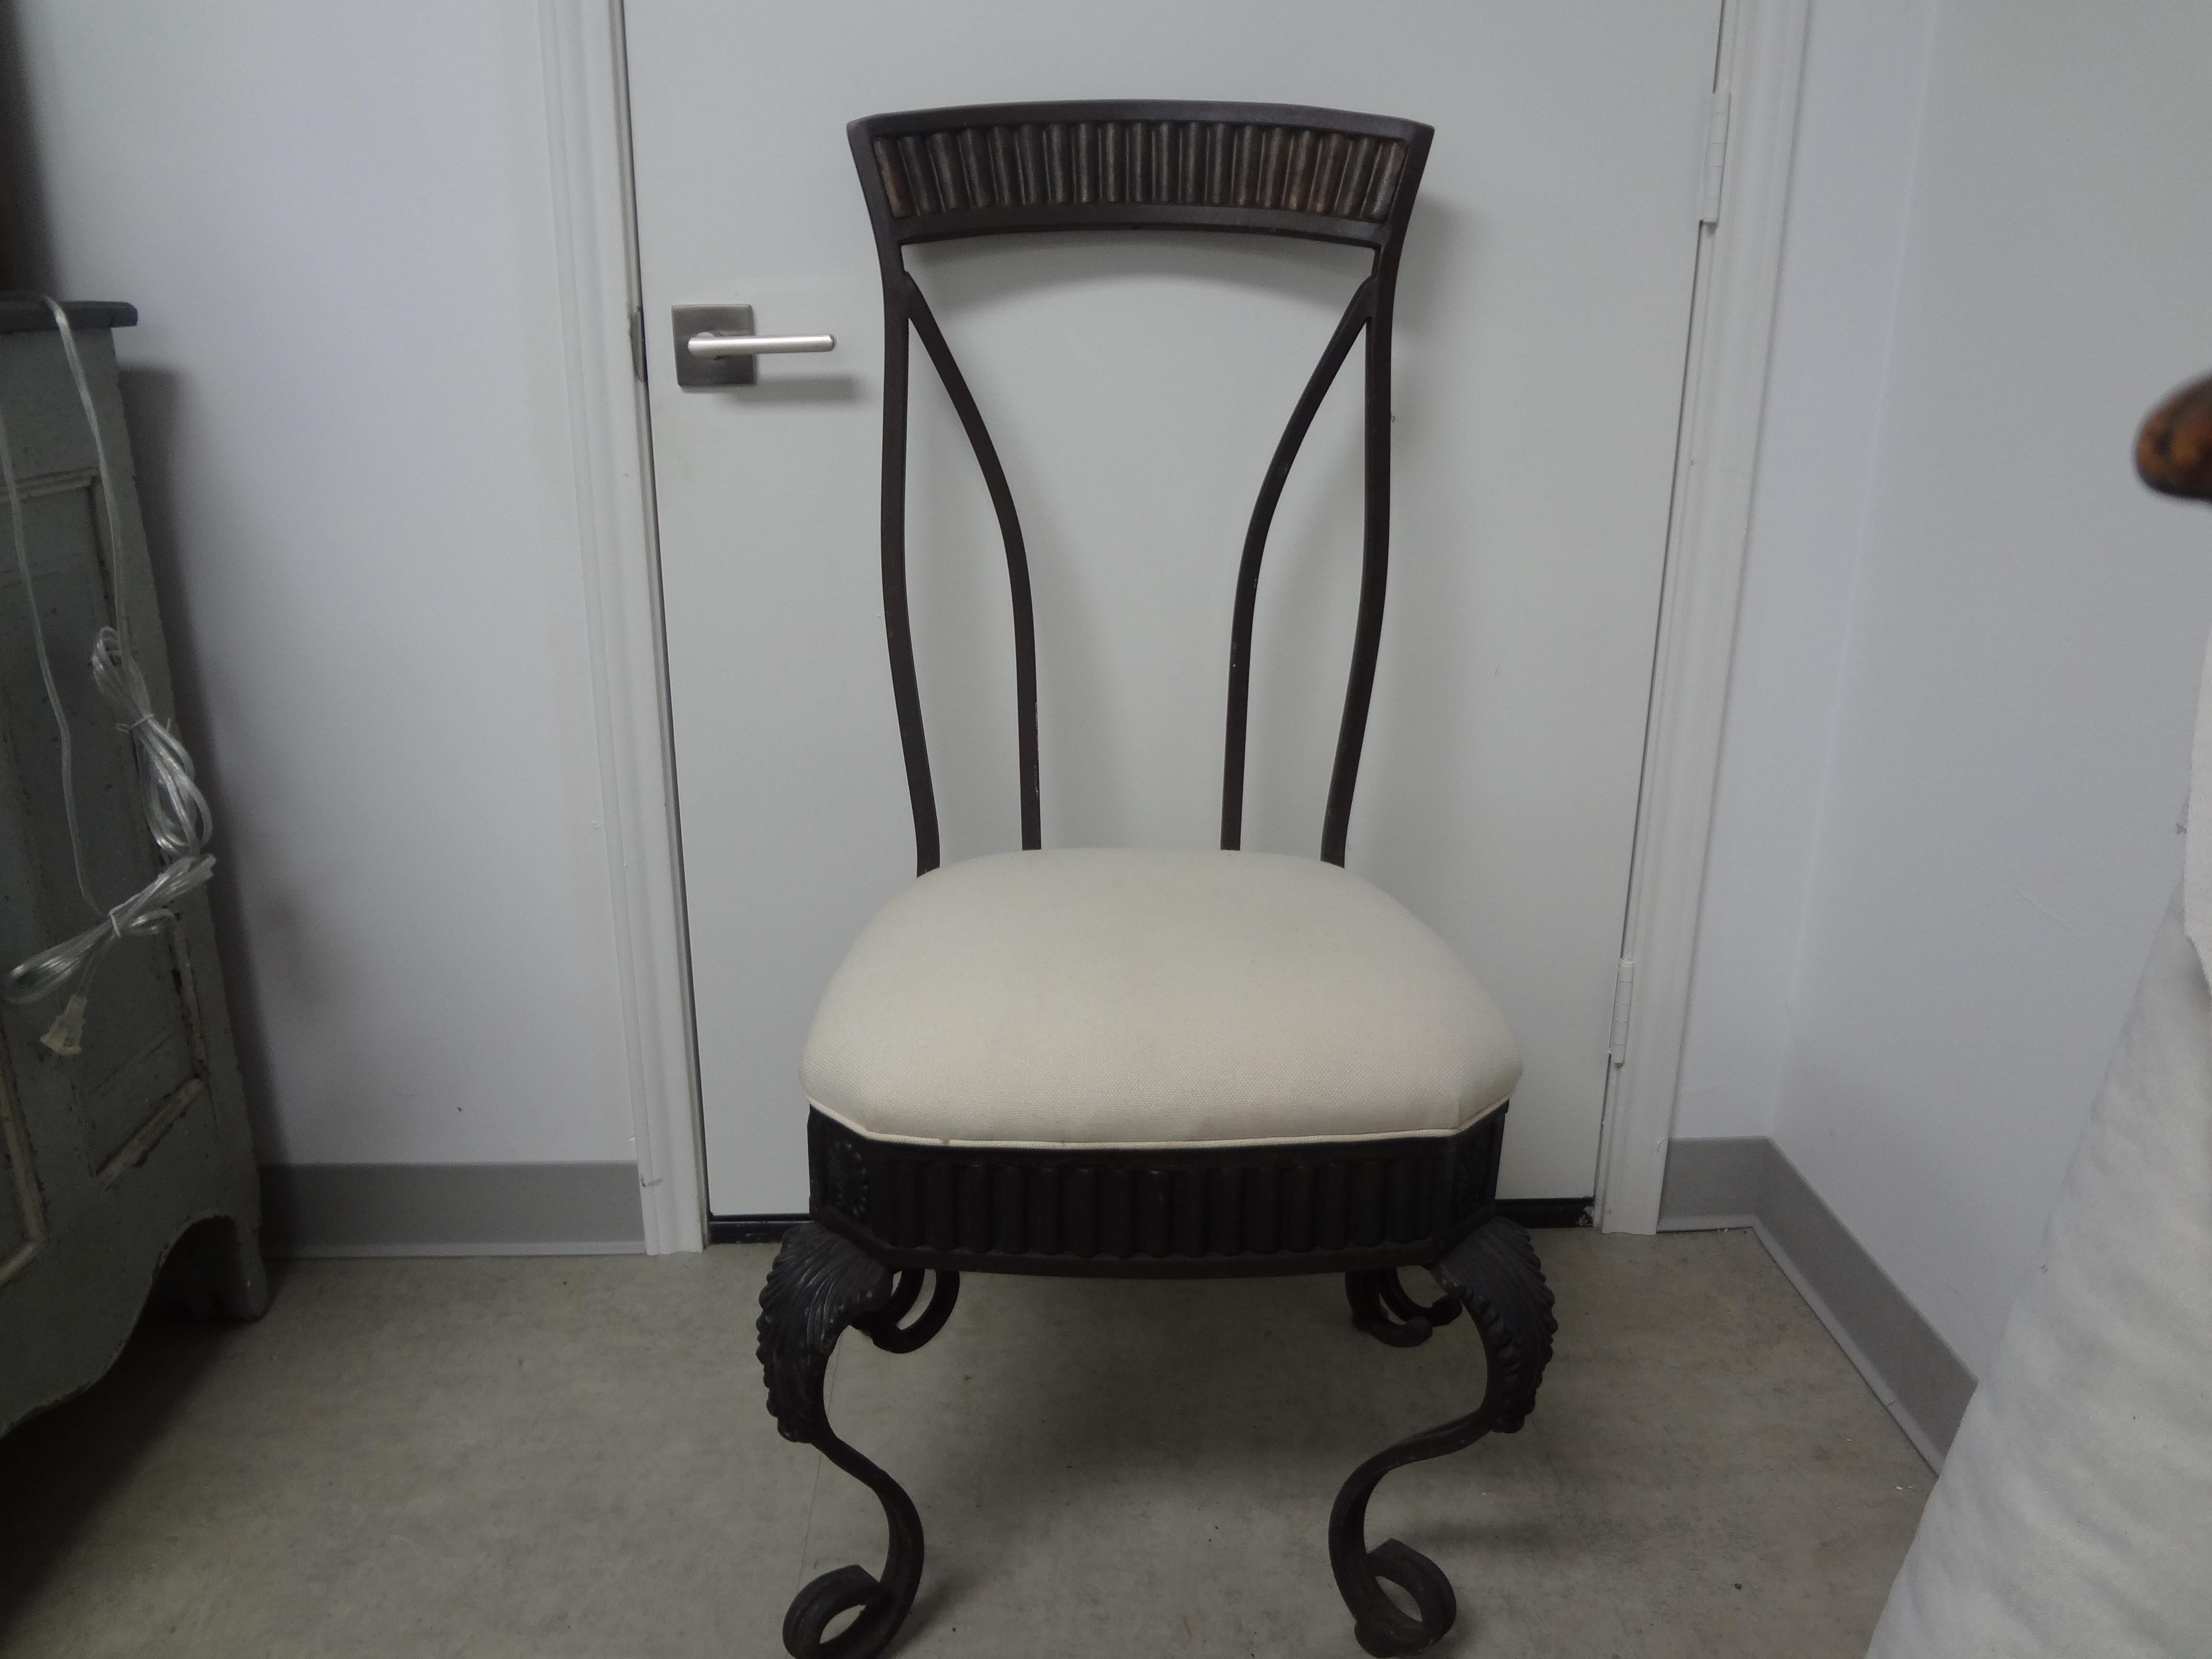 Paire de chaises de jardin en fer forgé italien.
Cette paire de chaises italiennes en fer forgé de style Hollywood Regency a un design tout en courbes et est aussi à l'aise à l'intérieur qu'à l'extérieur de votre maison.
La tapisserie est usagée